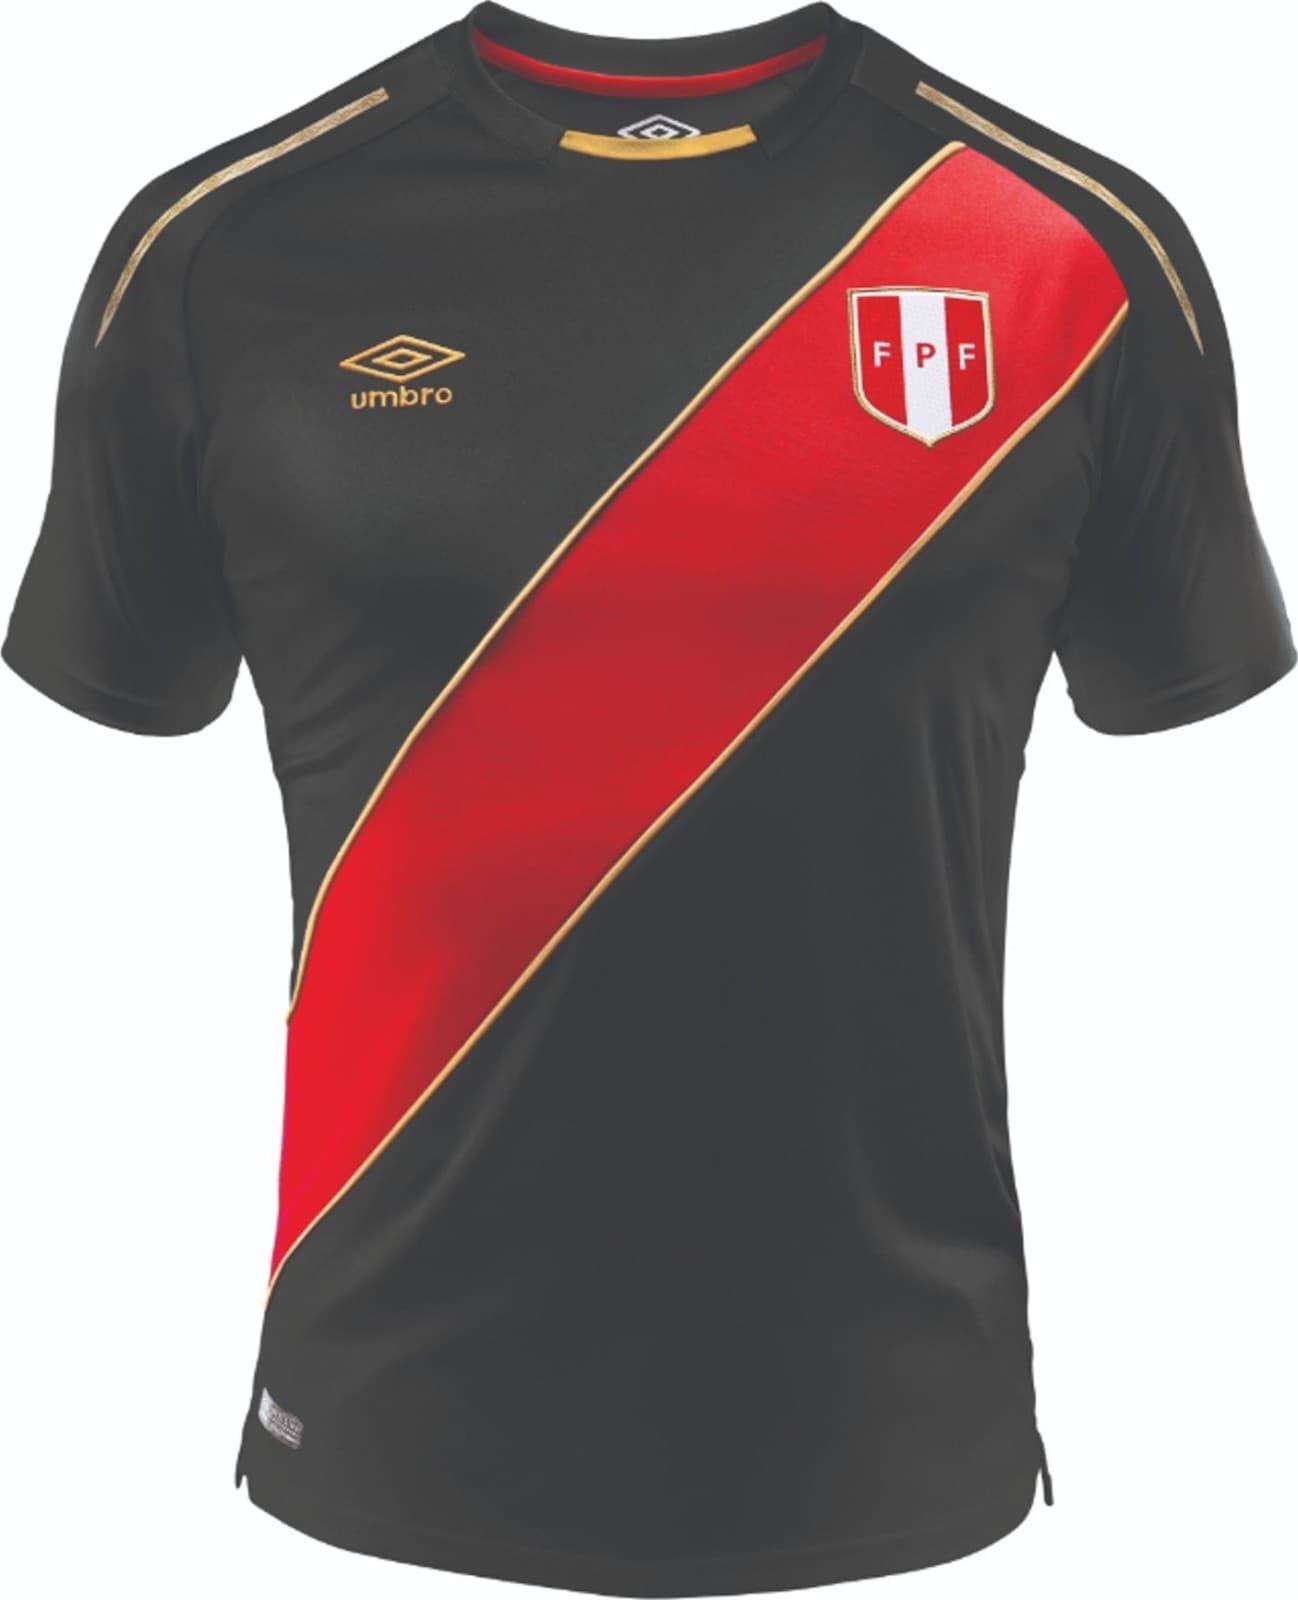 Peru Umbro Logo - Peru 2018 19 Third Shirt Released